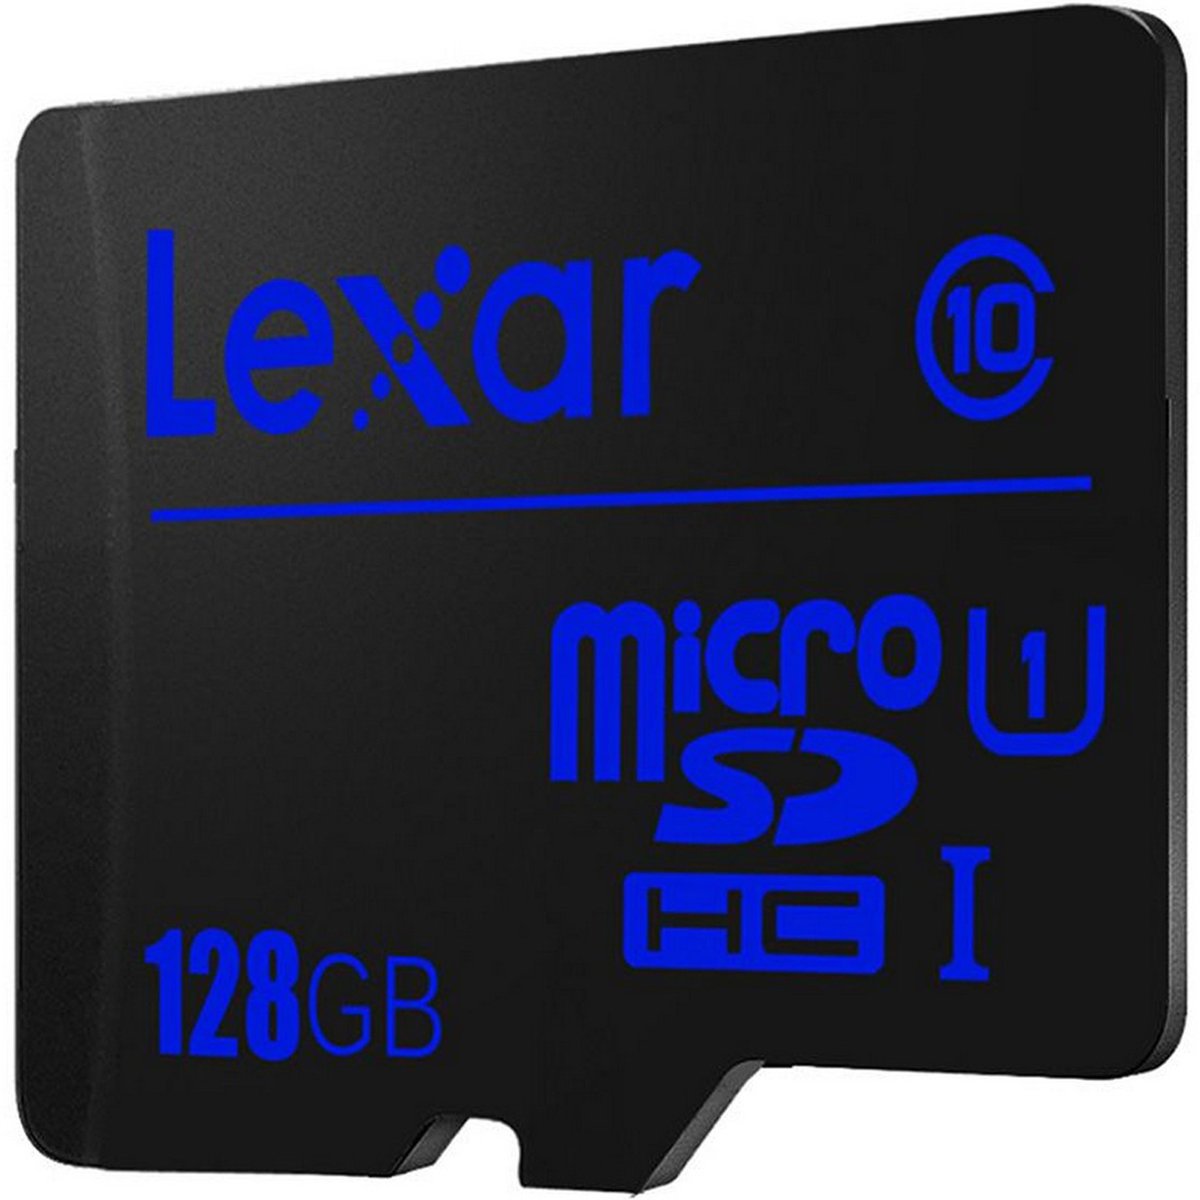 ليكسار بطاقة مايكرو SD LFSDM10 سعة 128 جيجابايت